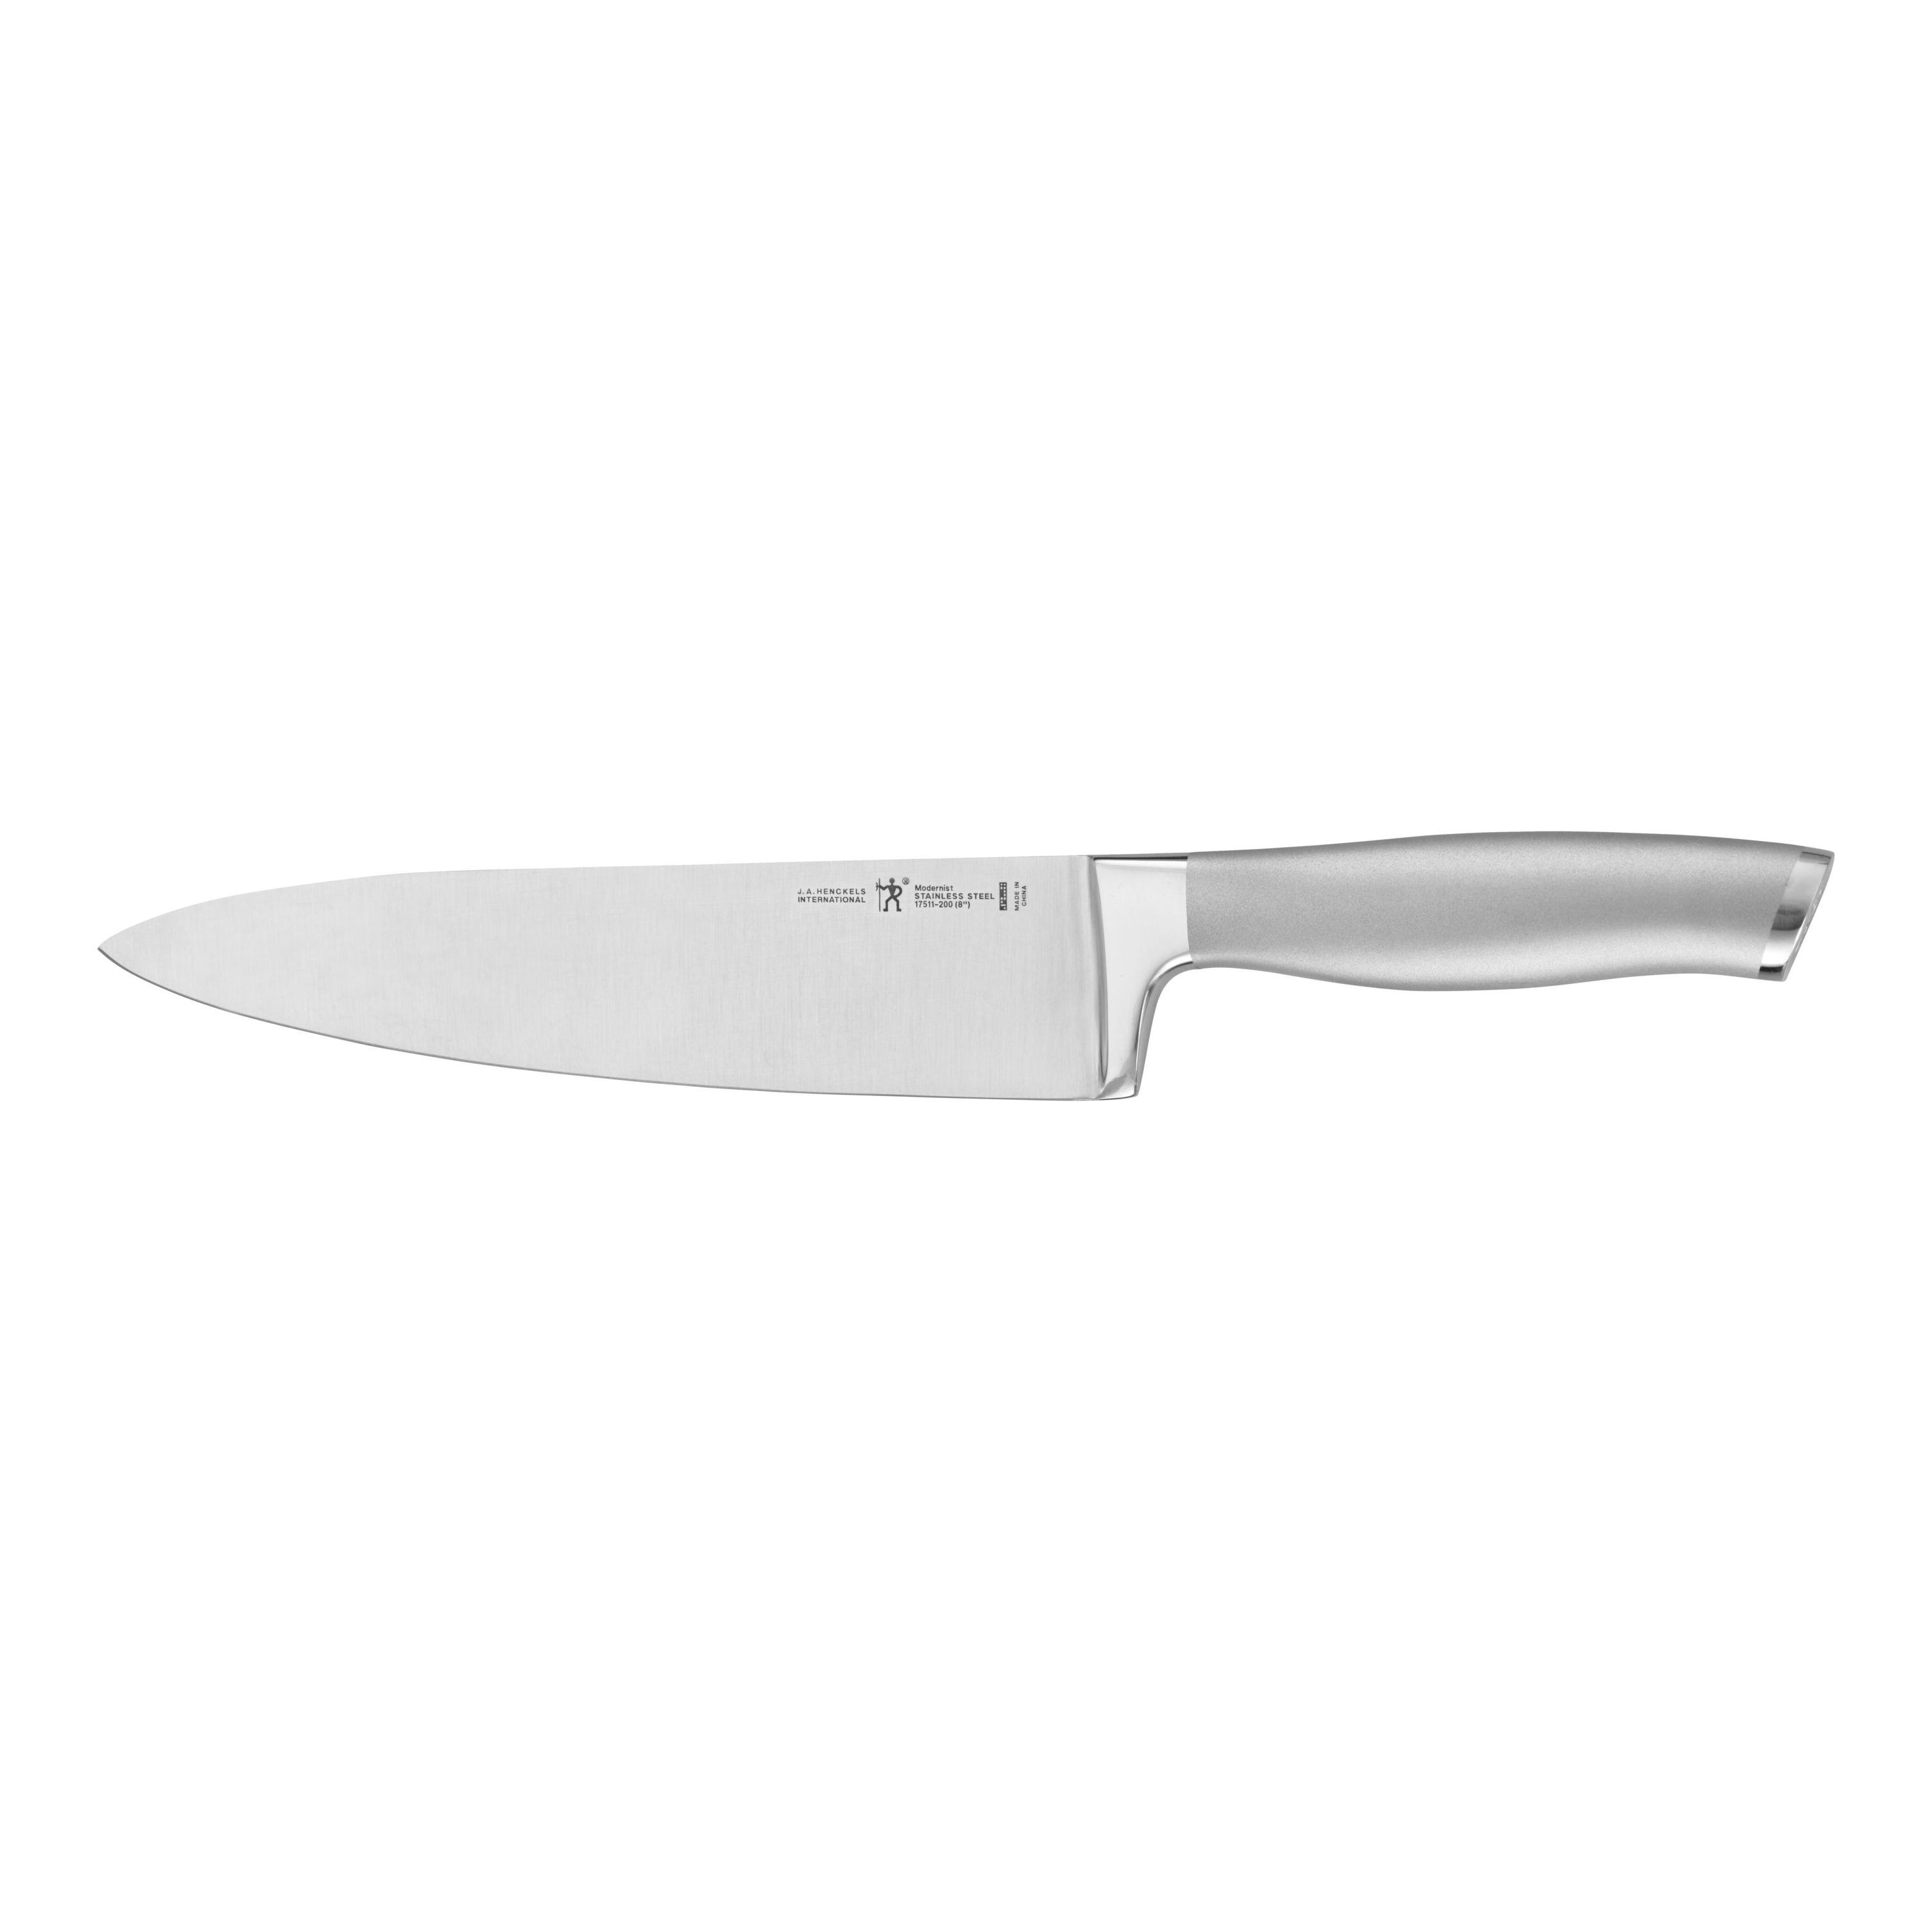 Made in USA. Black color Details about   Hunter Honer Sharpener Knife SAW tip Scissors 